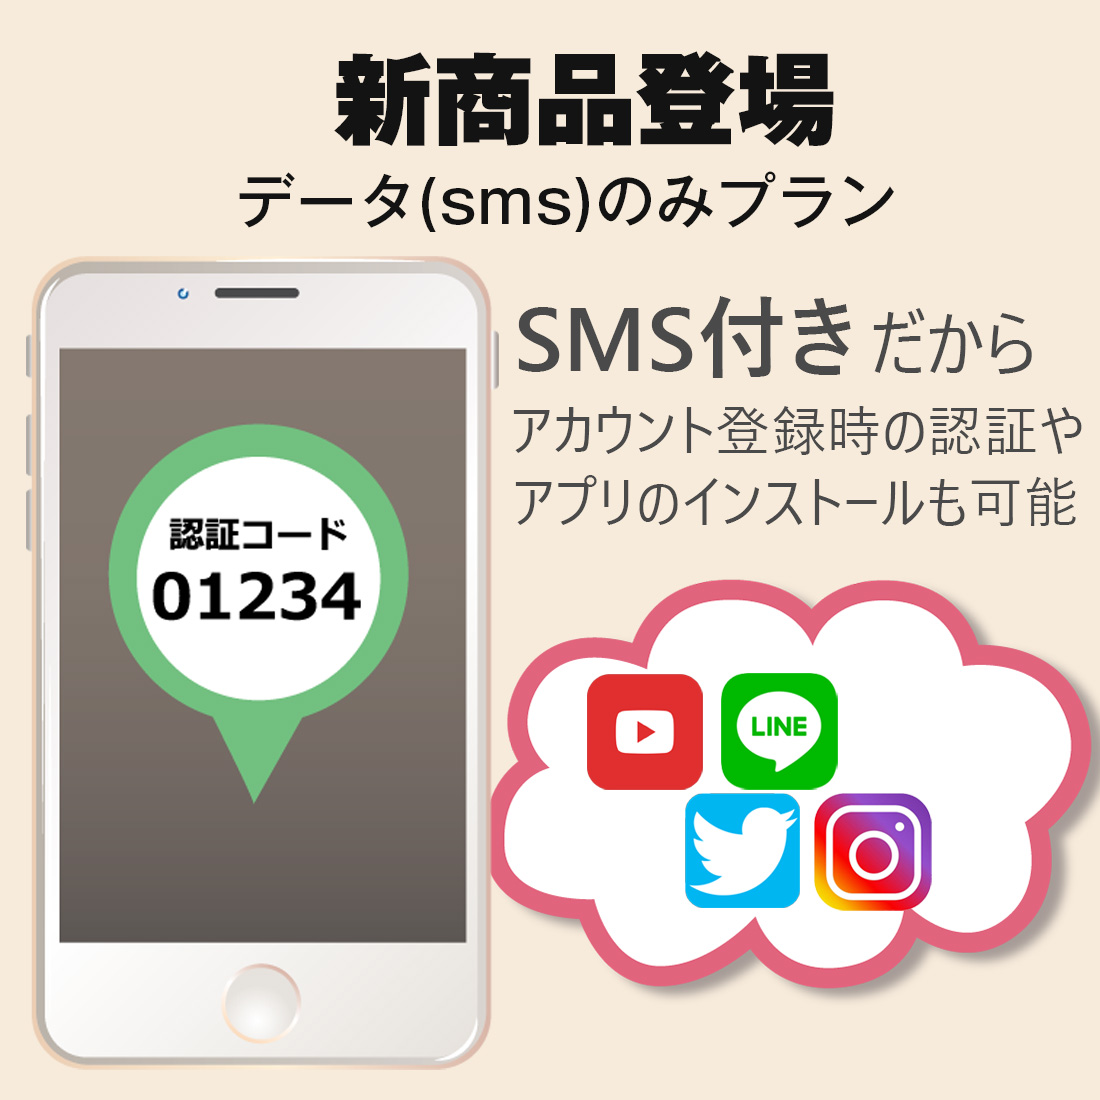 新登場データ(SMS)のみSIM